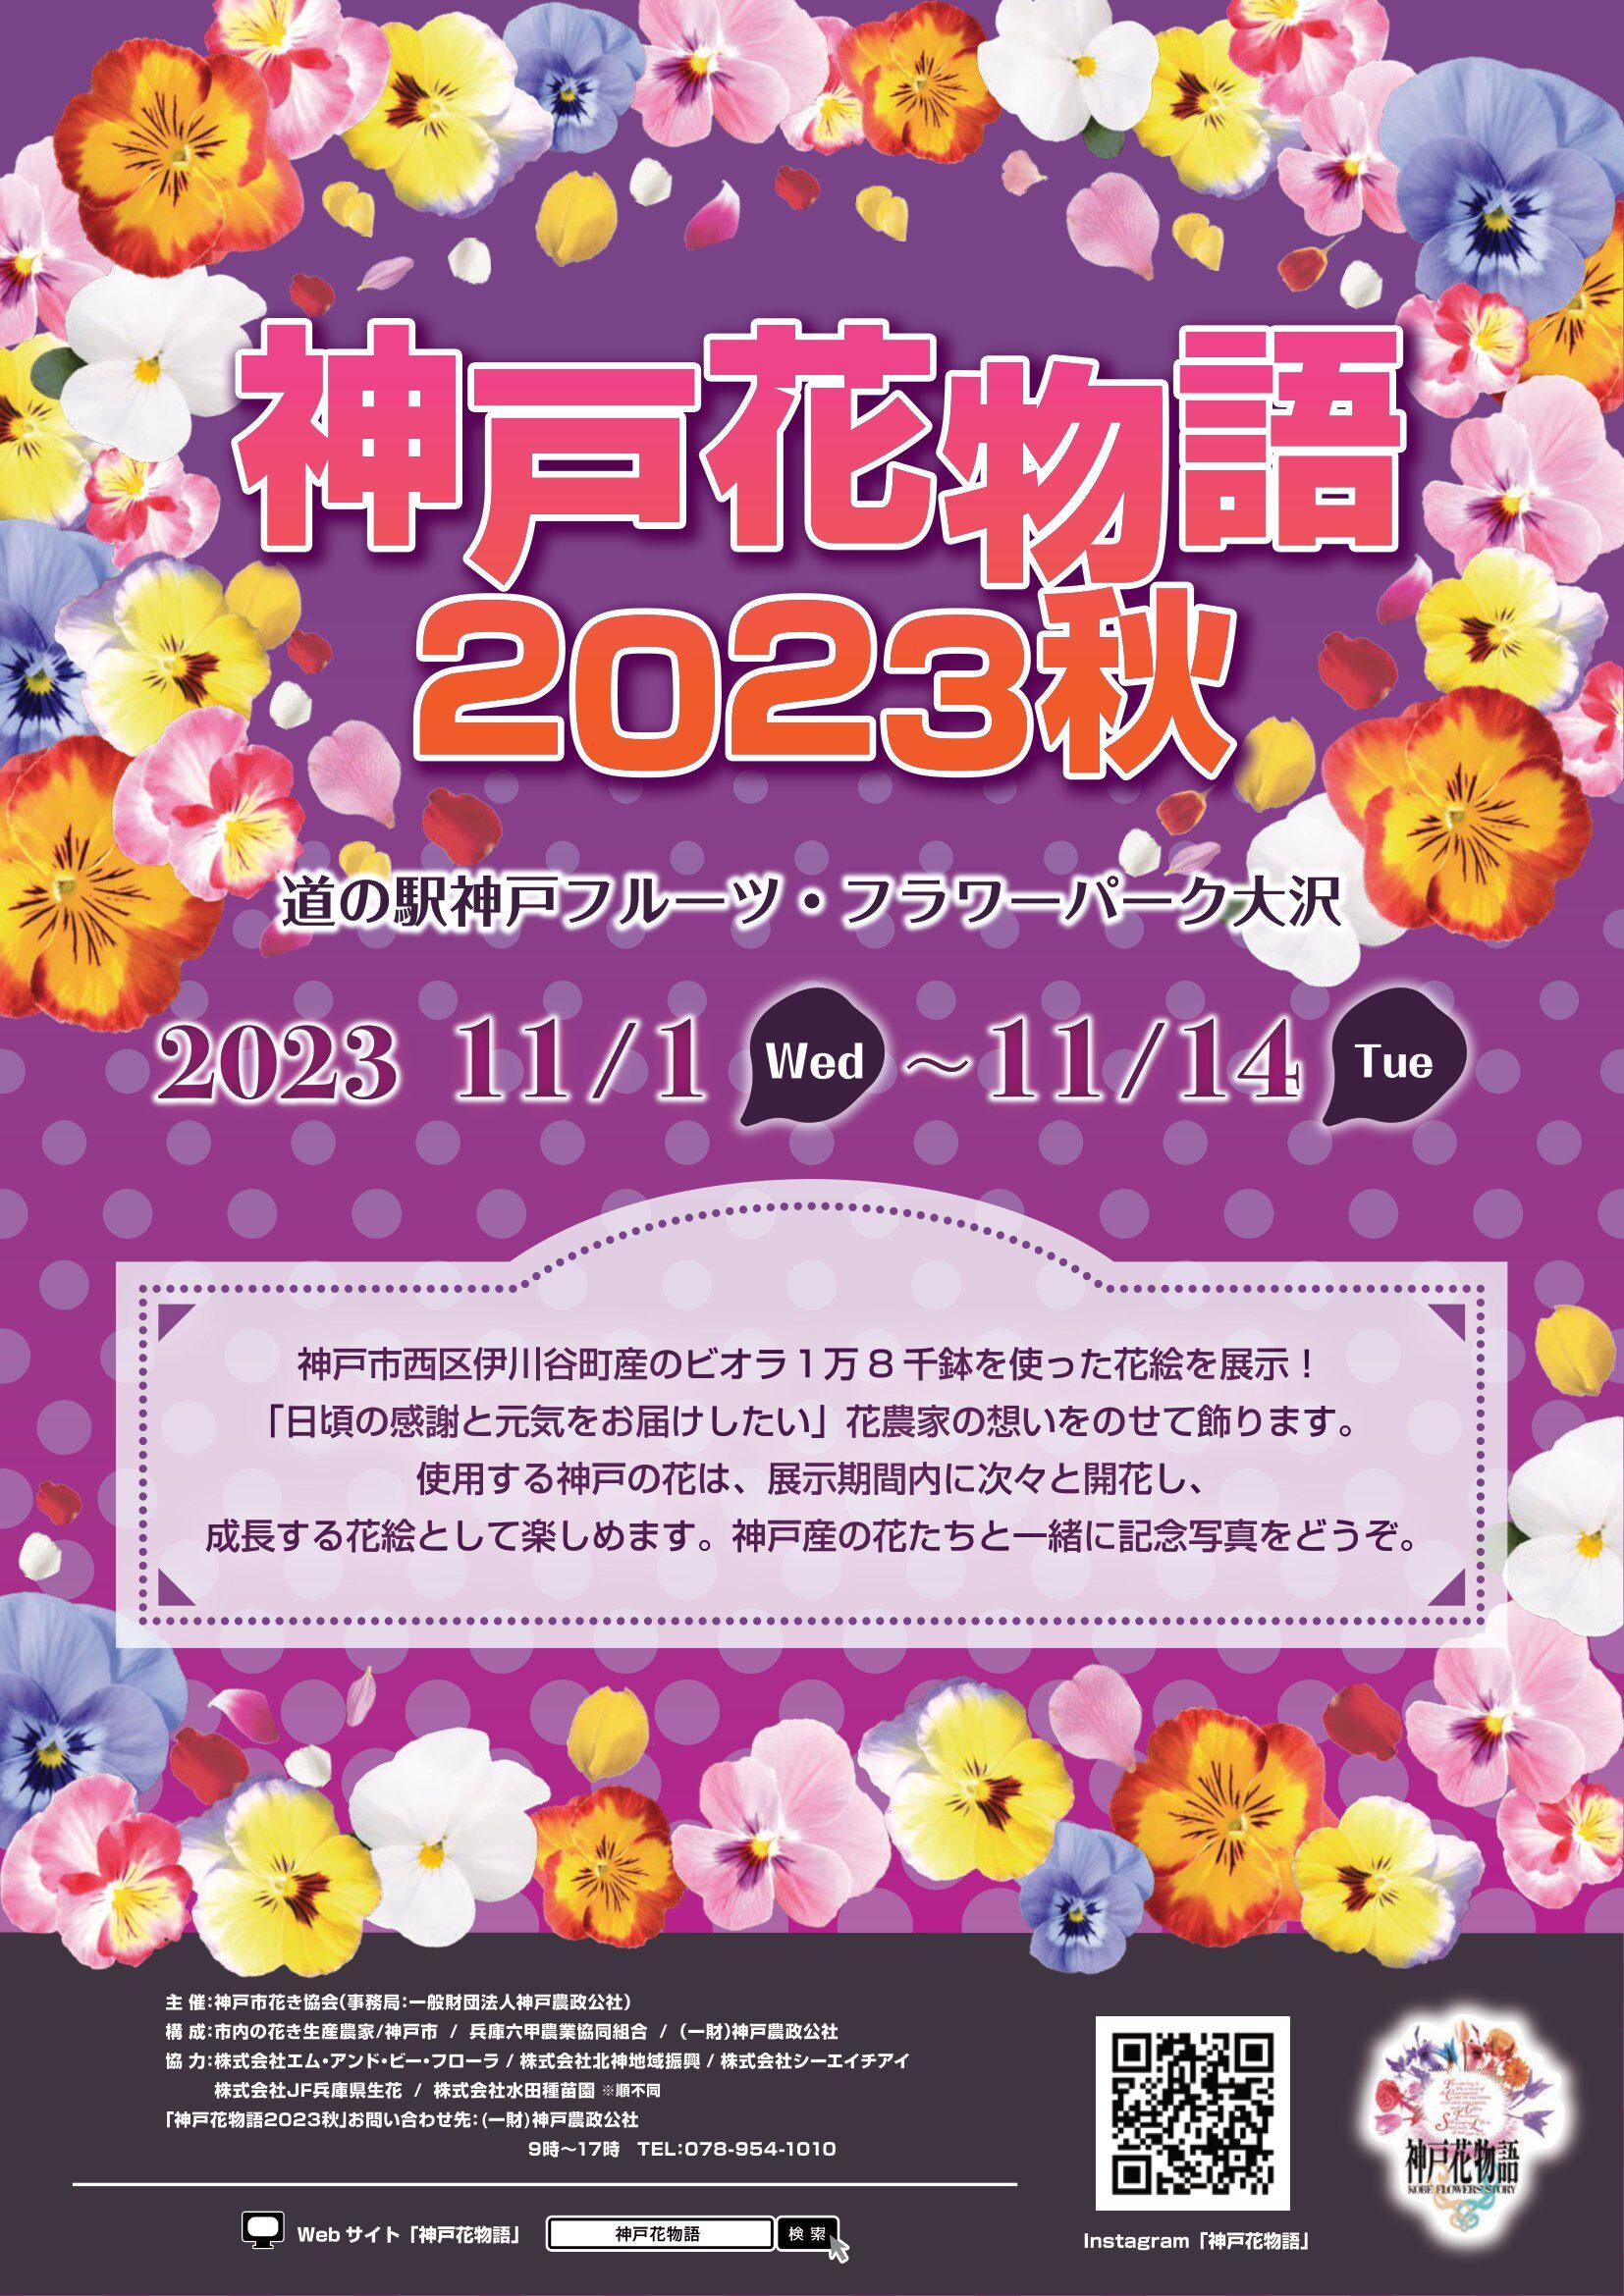 神戸花物語2023秋開催について